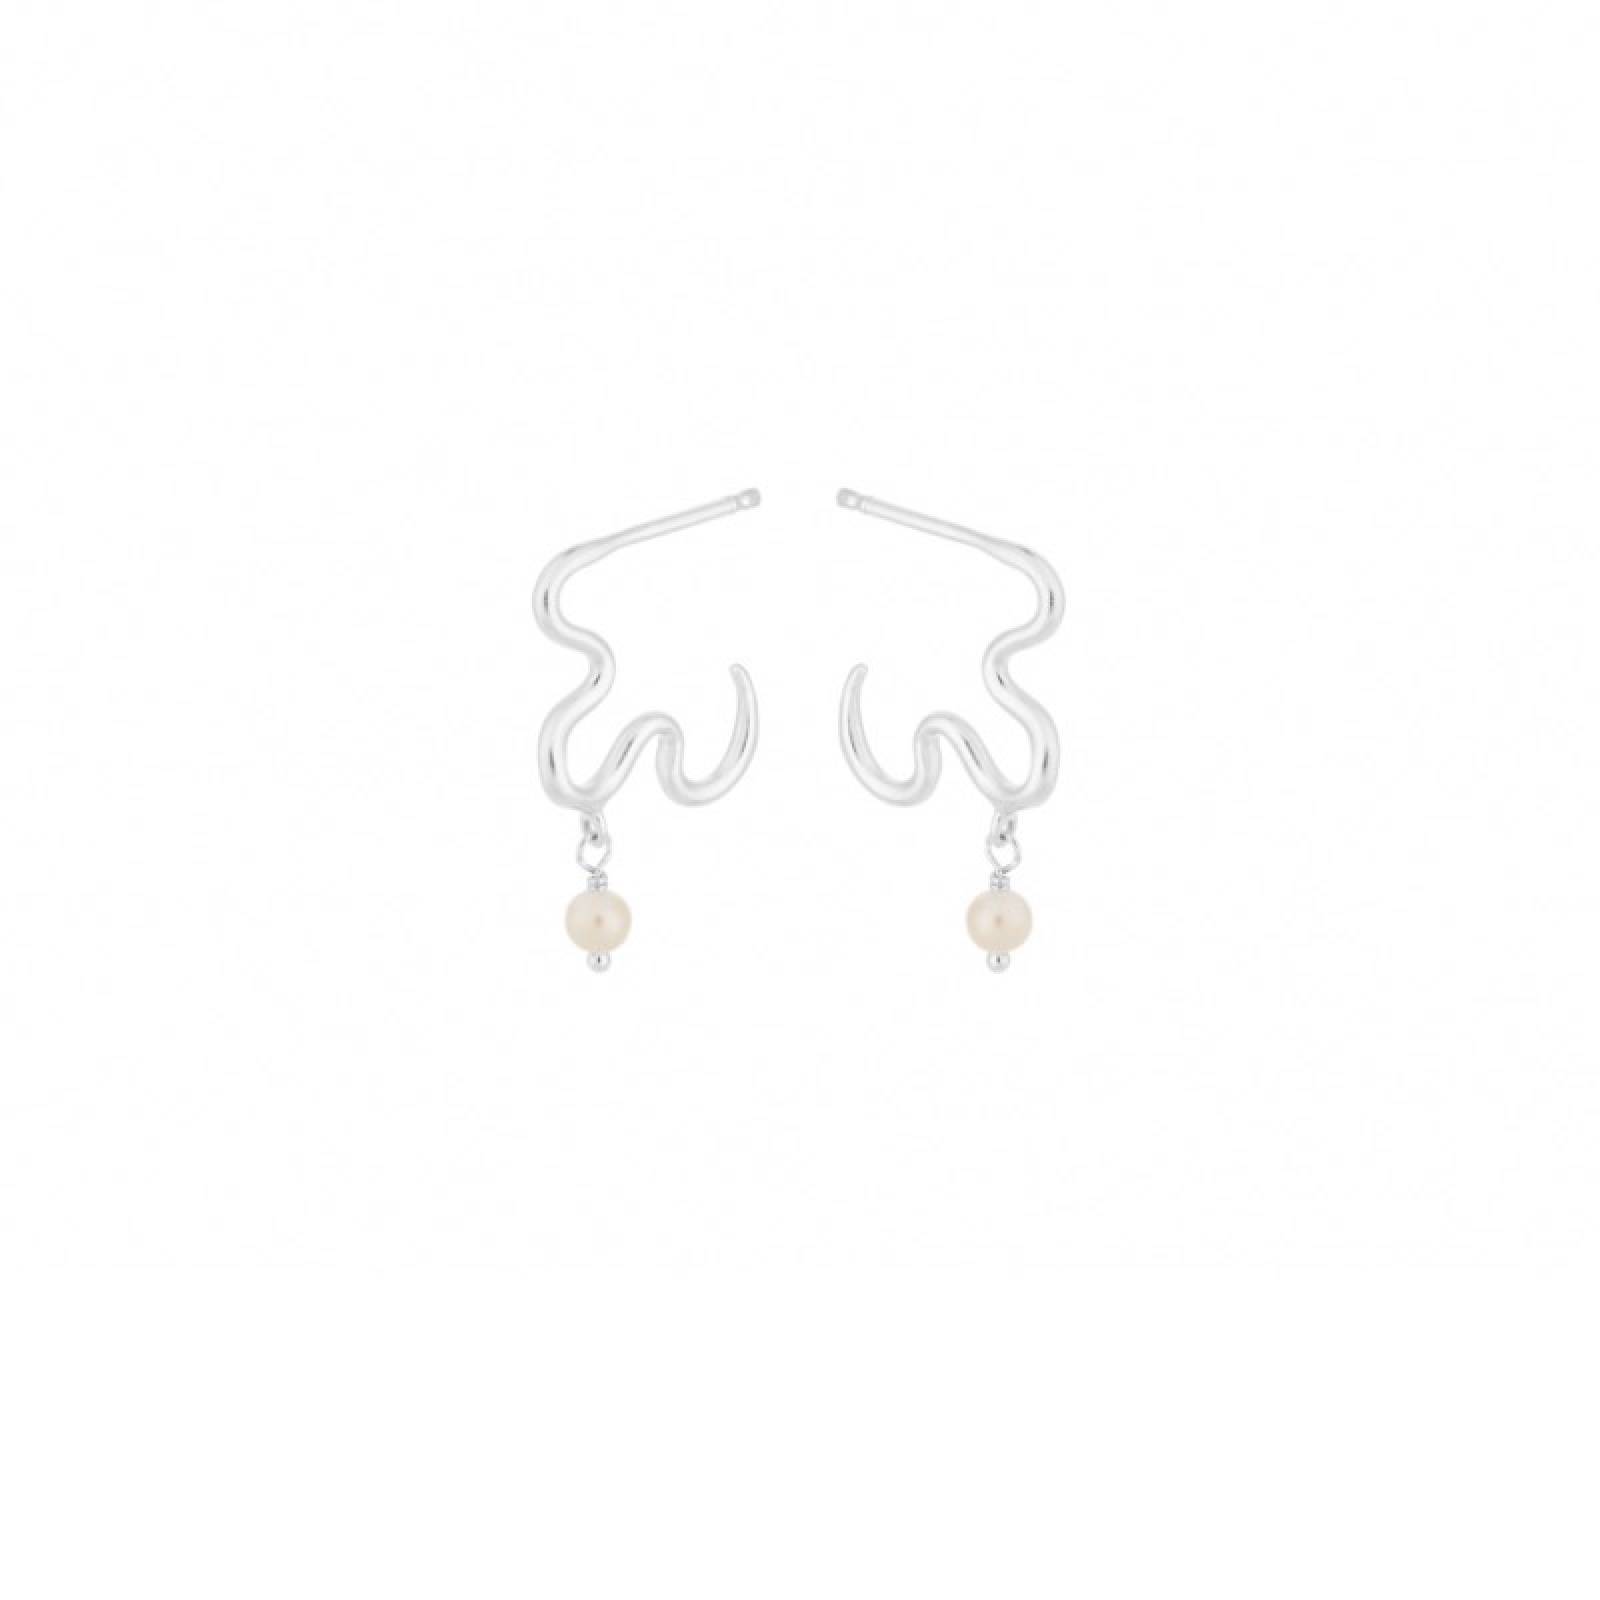 Ocean Dream Pearl Earrings In Silver By Pernille Corydon